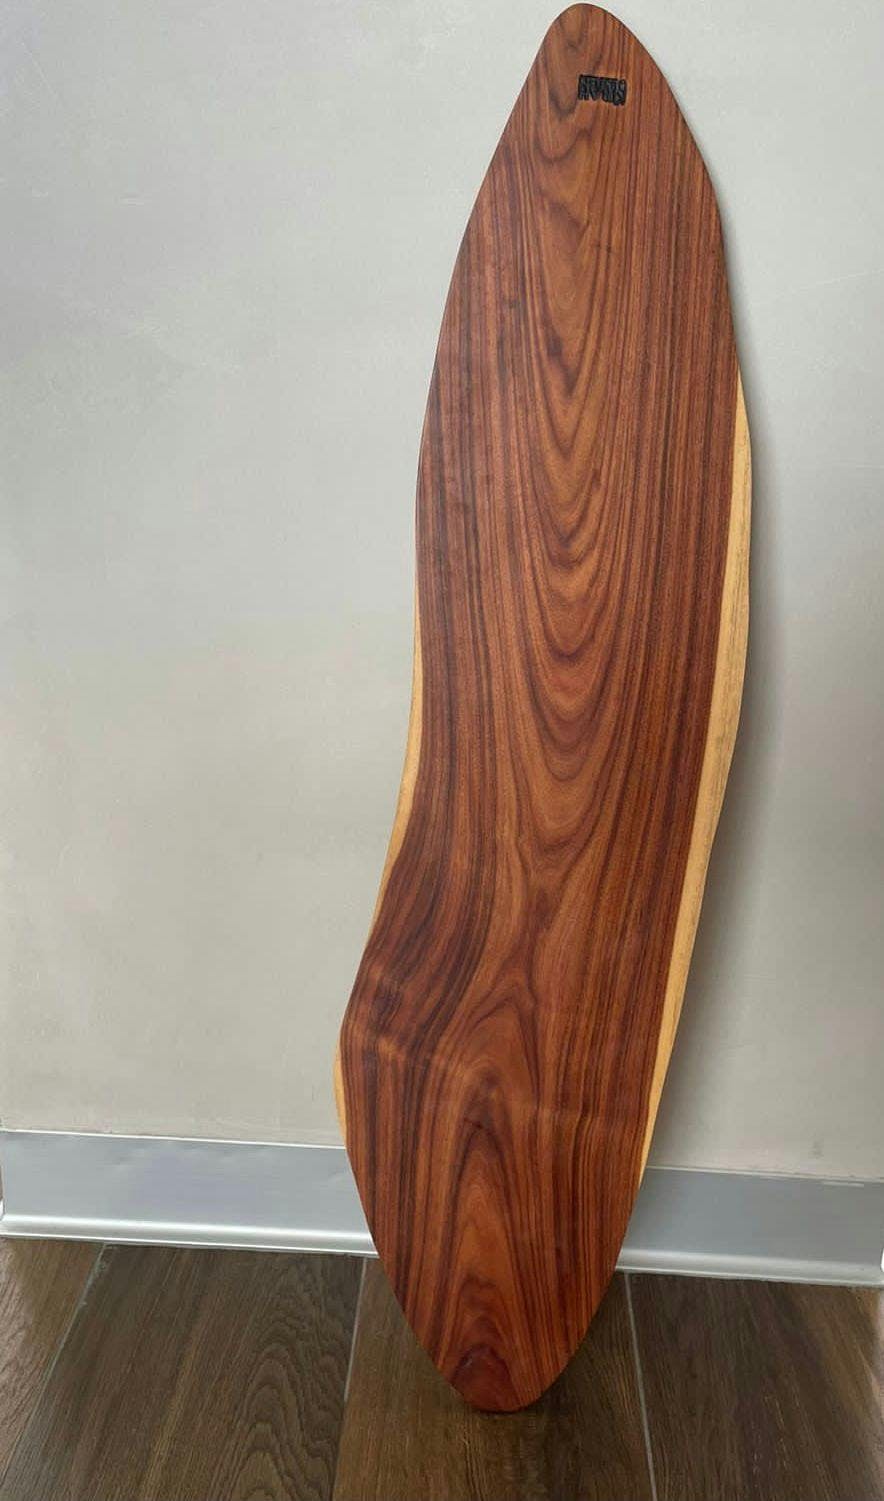 Tabla decorativa o para piqueos Kirah Design marca sostenible en madera rescatada con acabados de alta calidad. Medidas 84x20cm. Precio original S/ 570